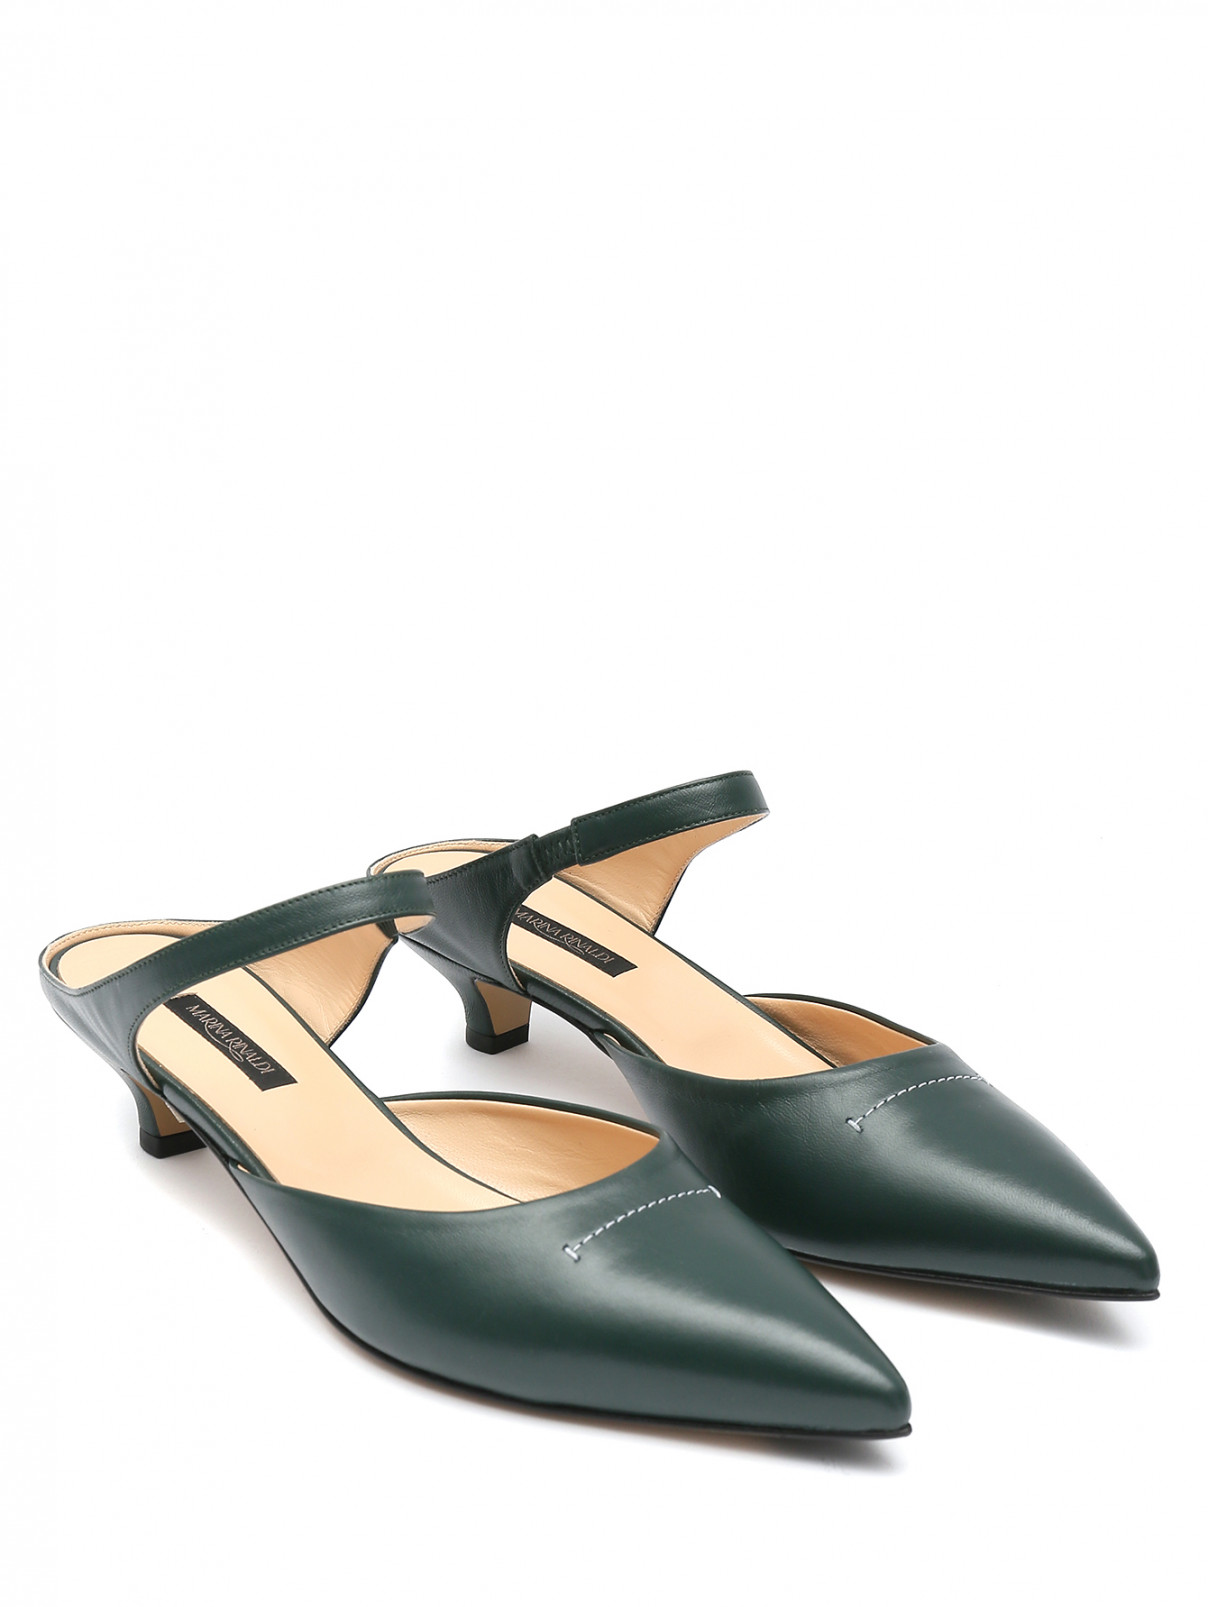 Туфли из кожи на низком каблуке Marina Rinaldi  –  Общий вид  – Цвет:  Зеленый